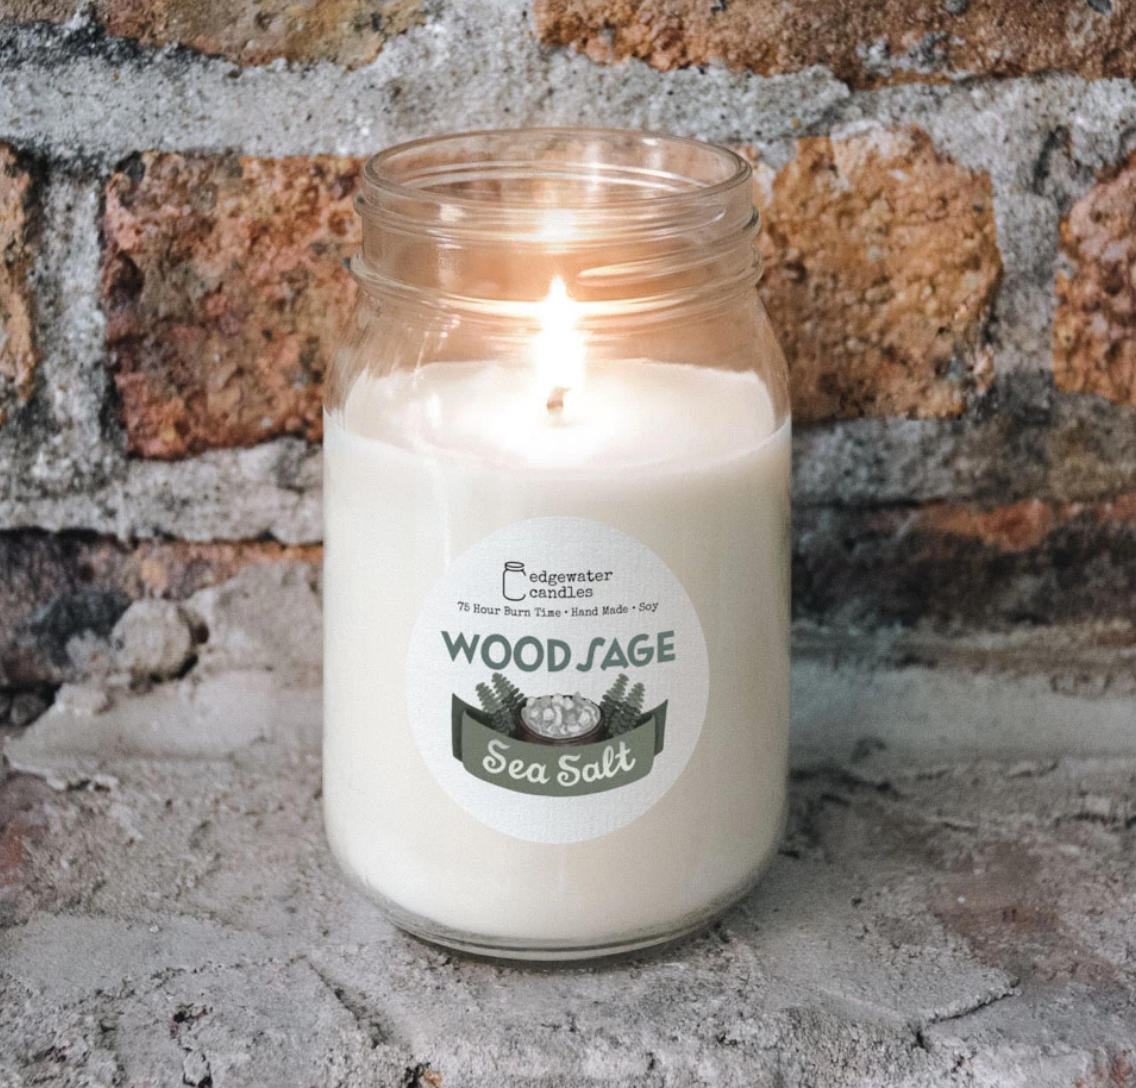 Wood Sage & Sea Salt Candle